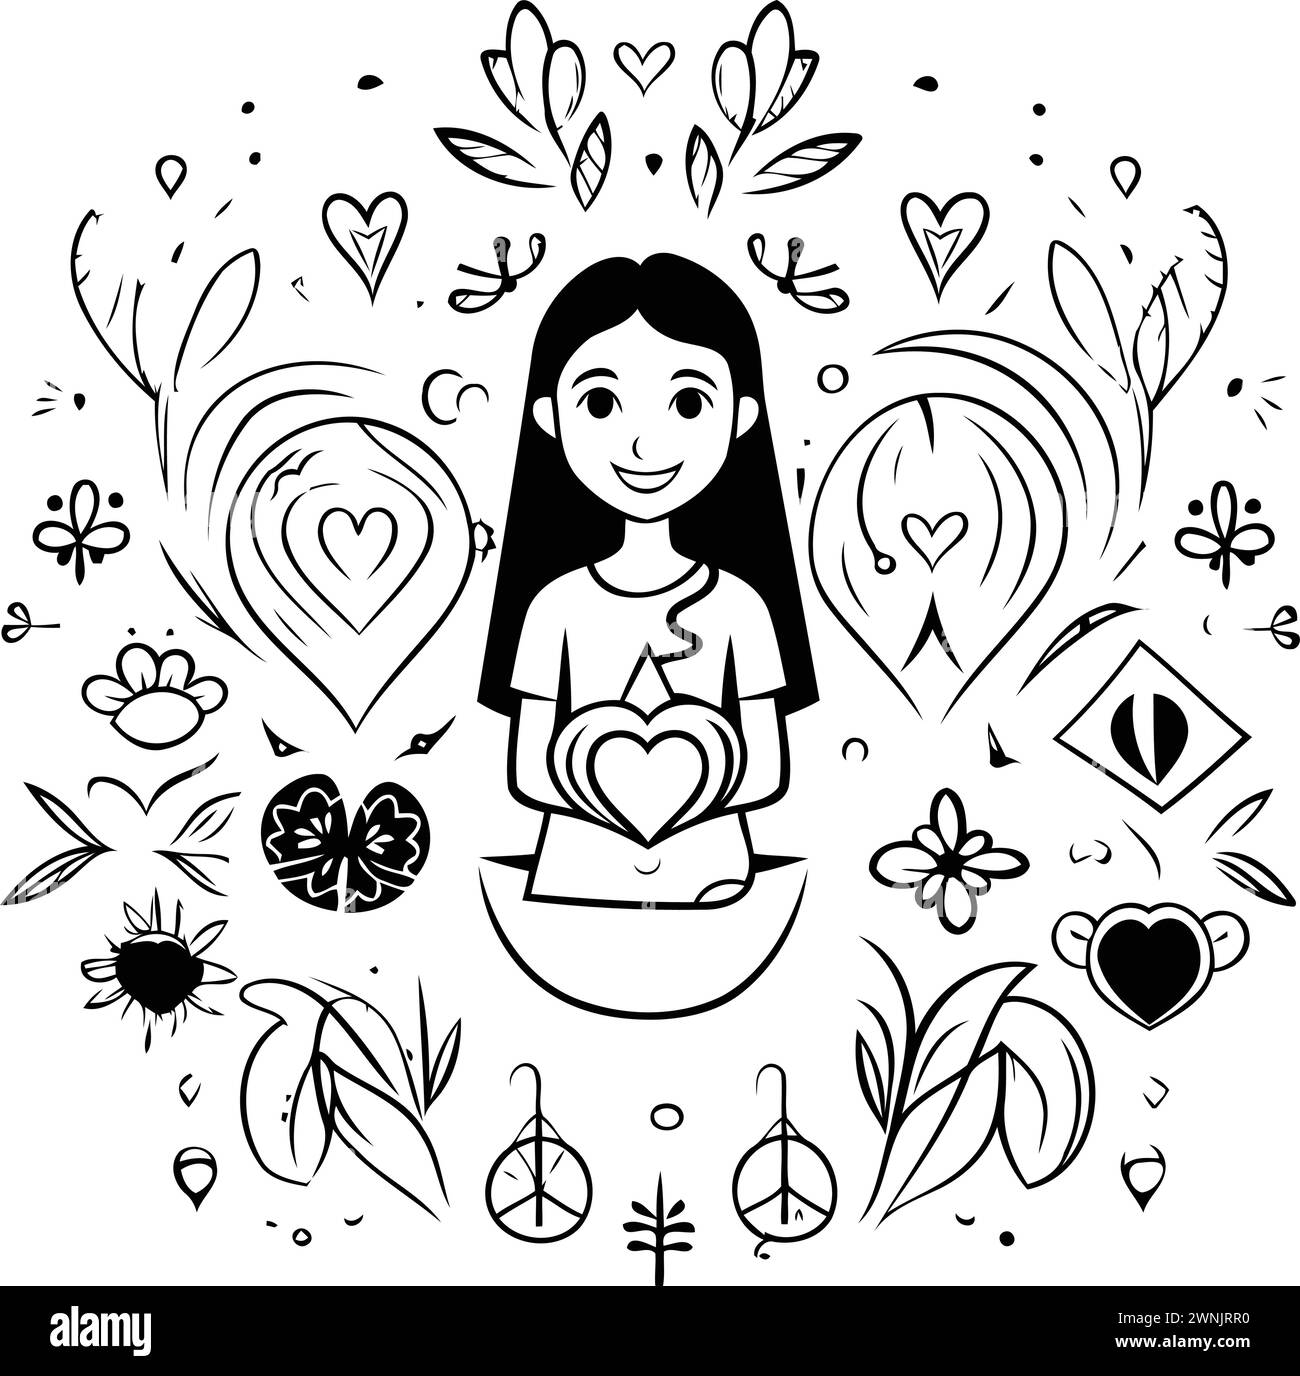 Vektor-Illustration eines Mädchens in Lotusposition umgeben von Blumen und Herzen. Stock Vektor